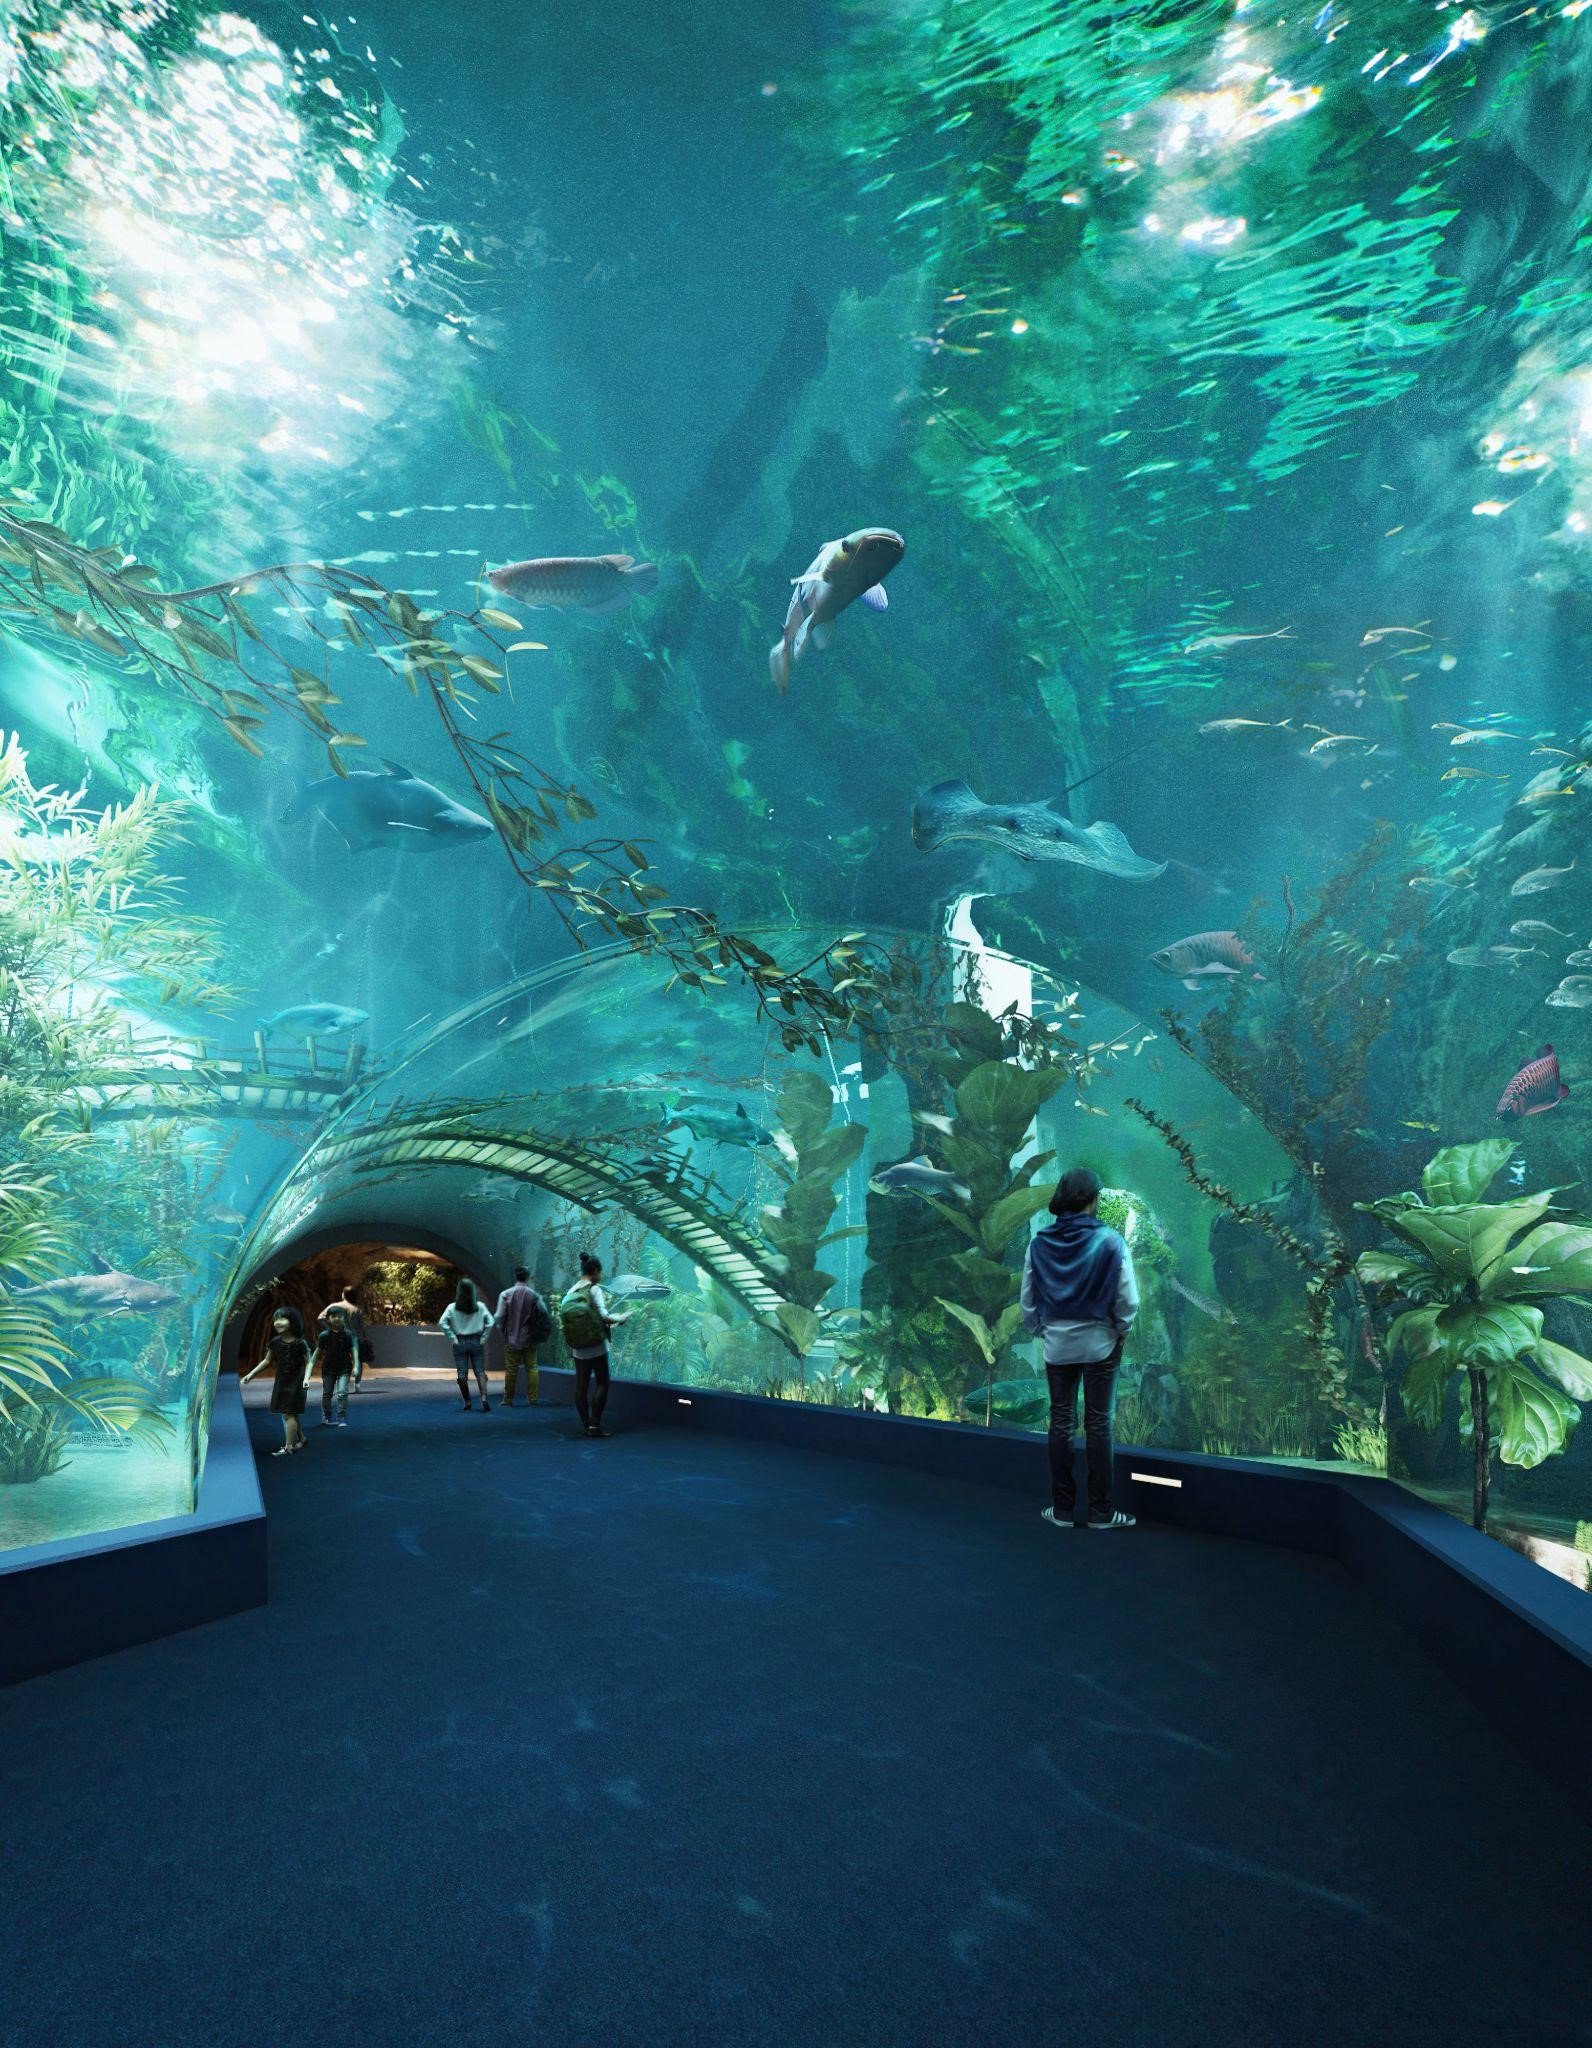 Thủy cung Lotte World Hà Nội – Thế giới đại dương đầy màu sắc sắp khai trương giữa lòng Thủ đô - 3